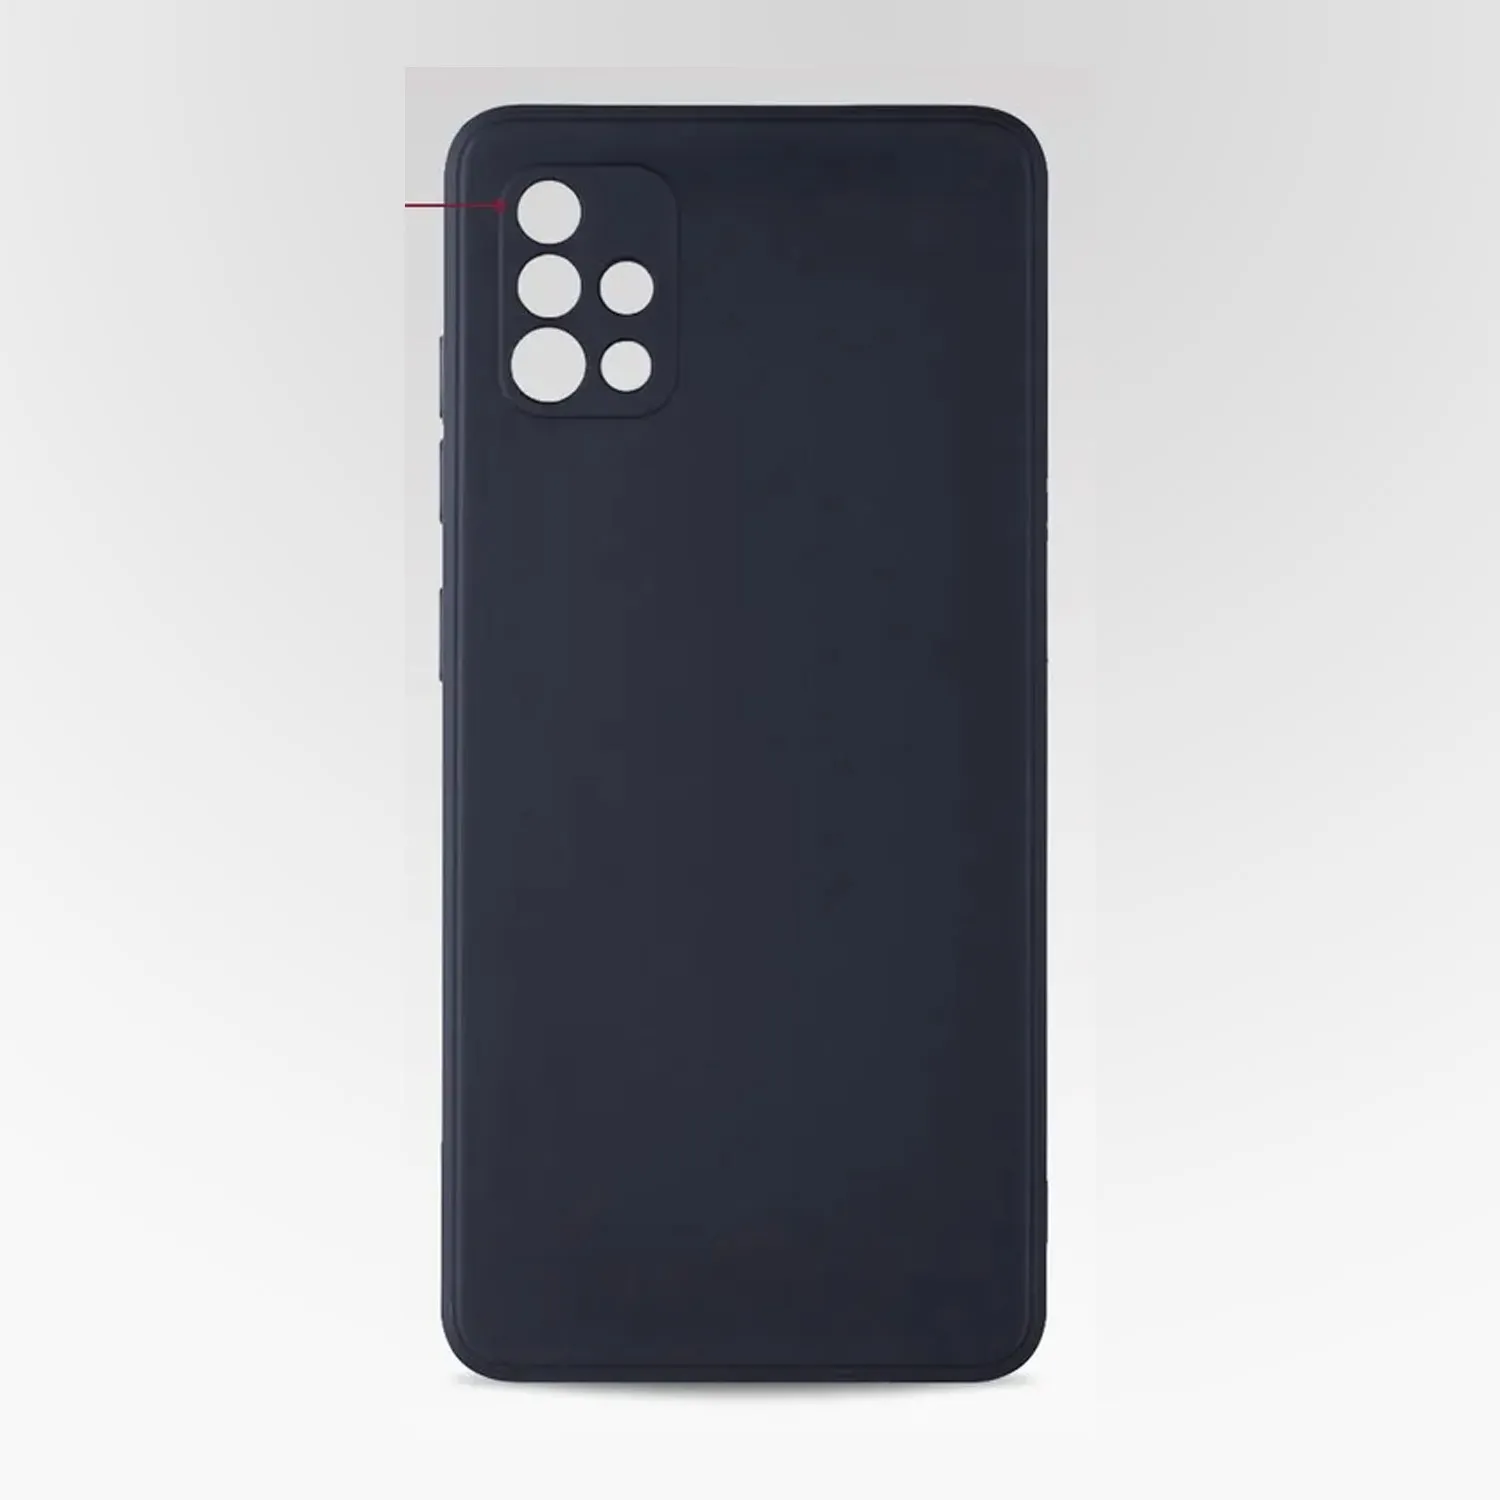 Cиликоновый чехол FASHION CASE Samsung Galaxy A51 (черный)